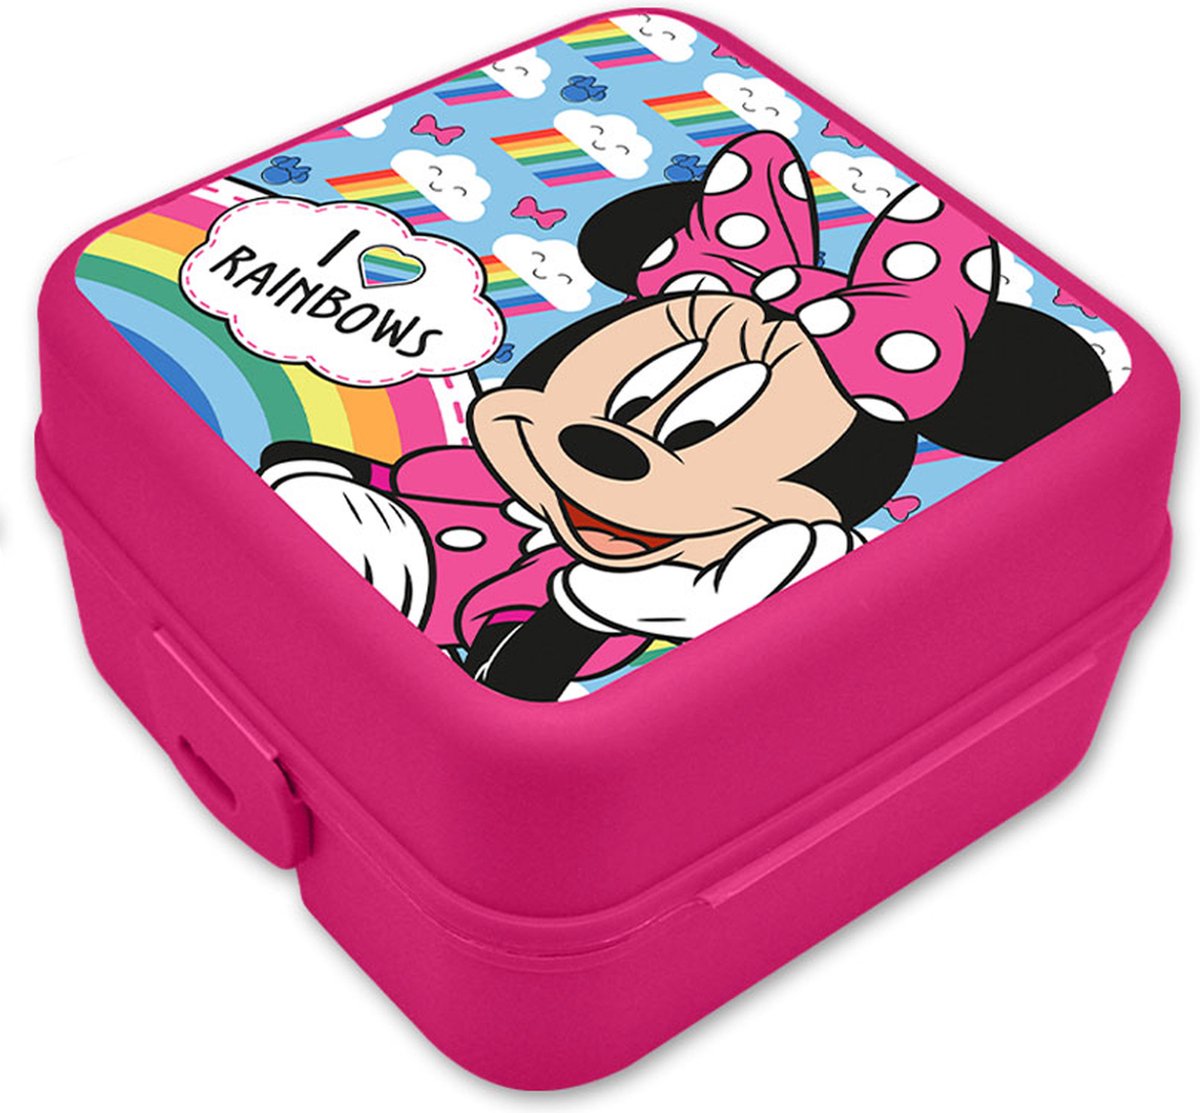 Dww-rose Lunch Box, Bote Djeuner En Plastique Pour Enfant Adulte